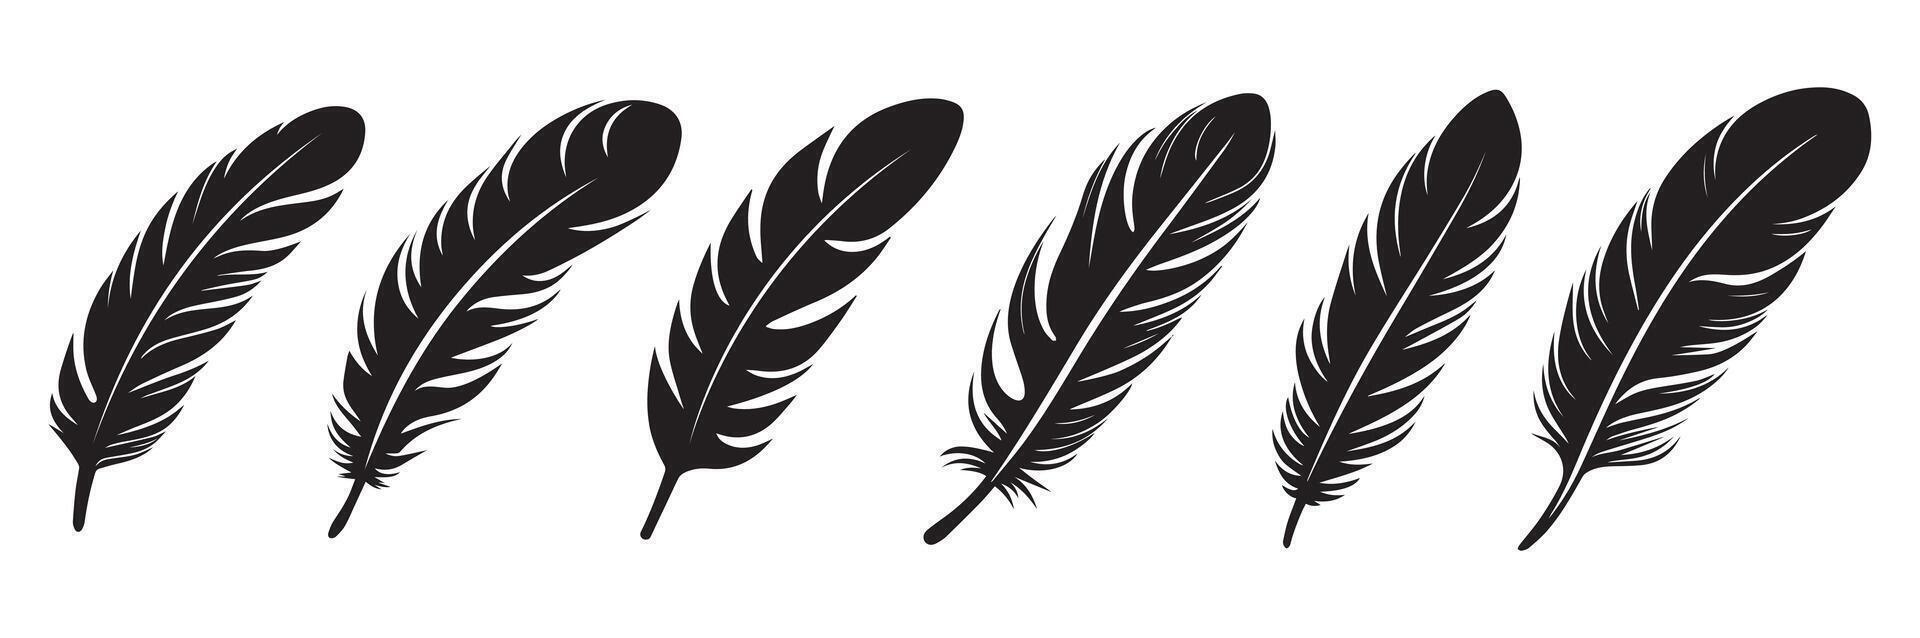 fjäder ikon. svart silhuett av en fågel på en vit bakgrund. vektor